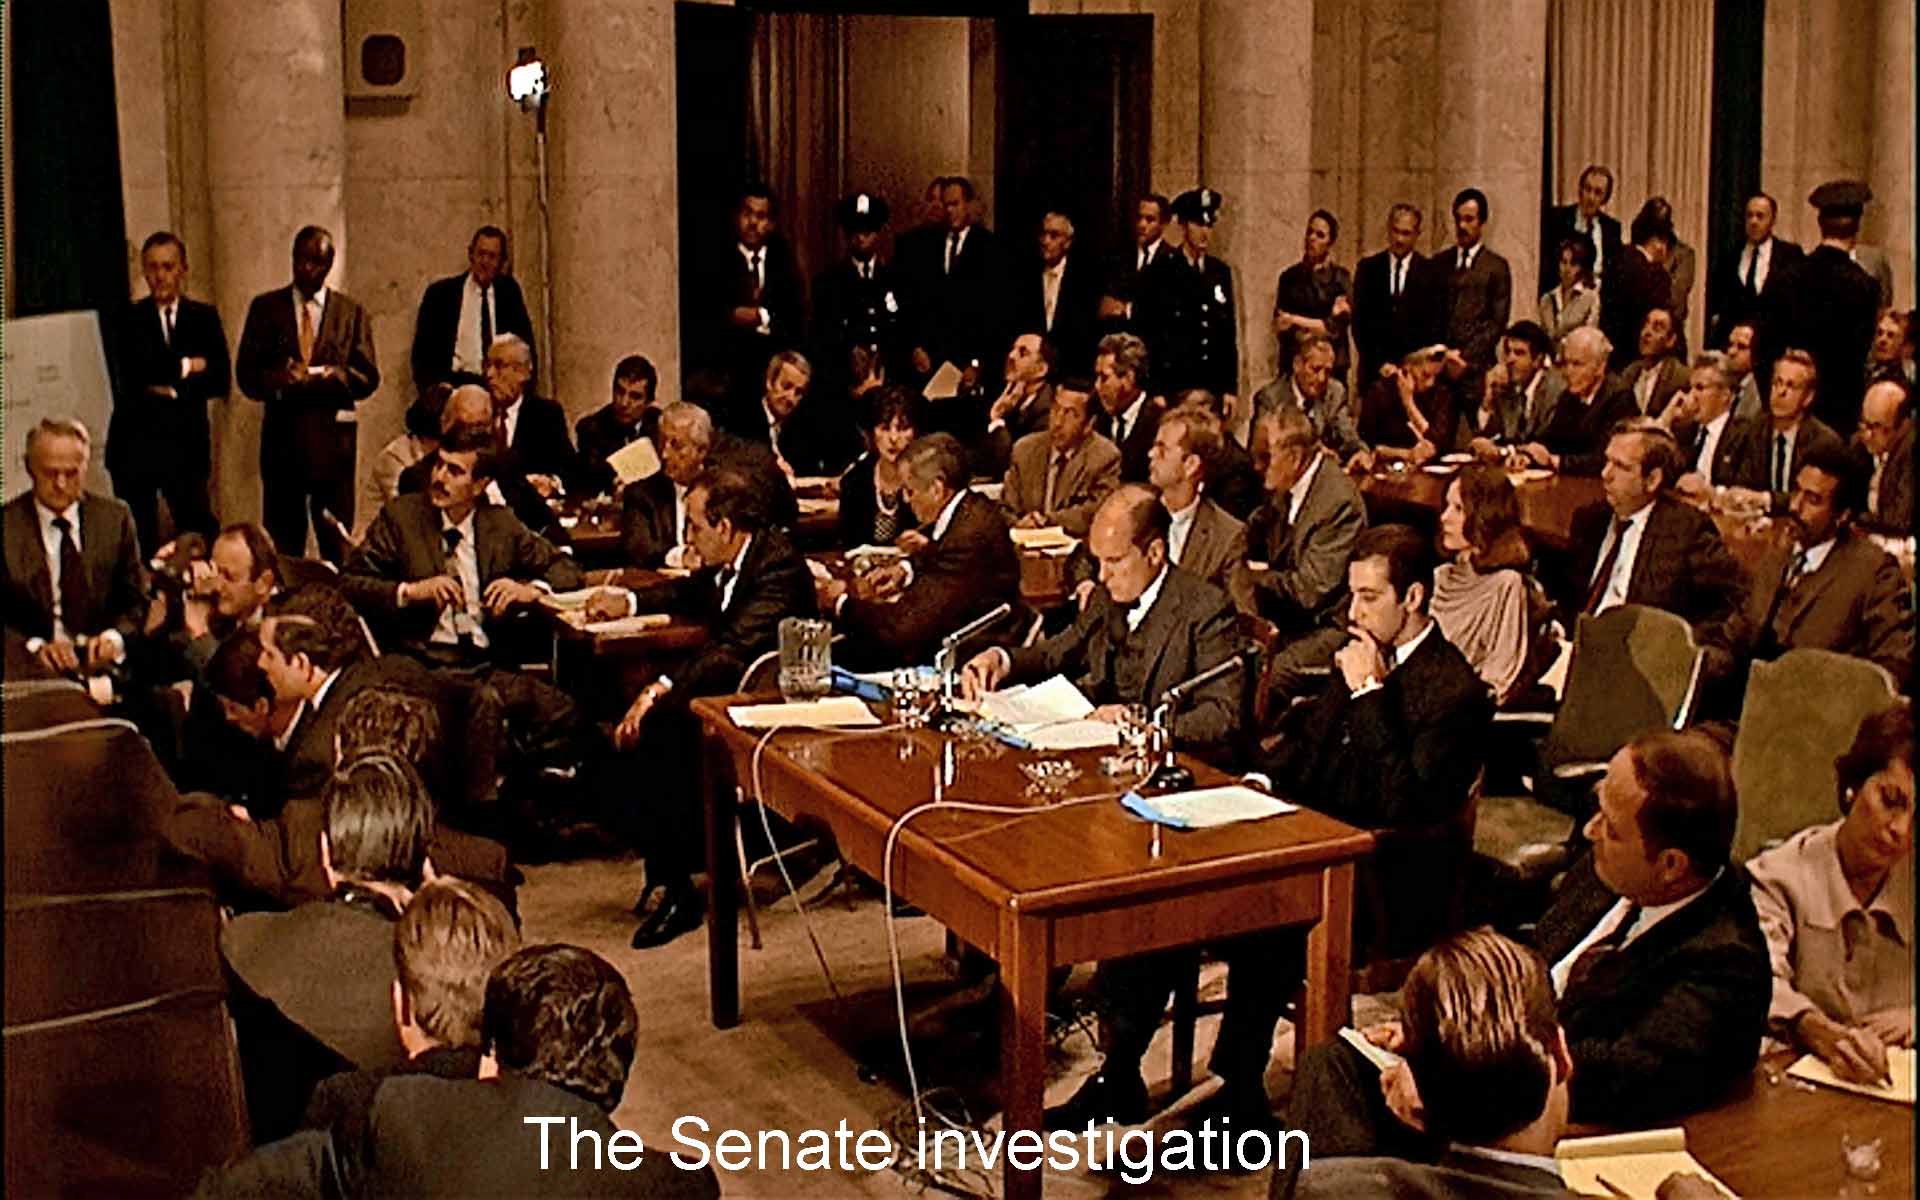 The Senate investigation